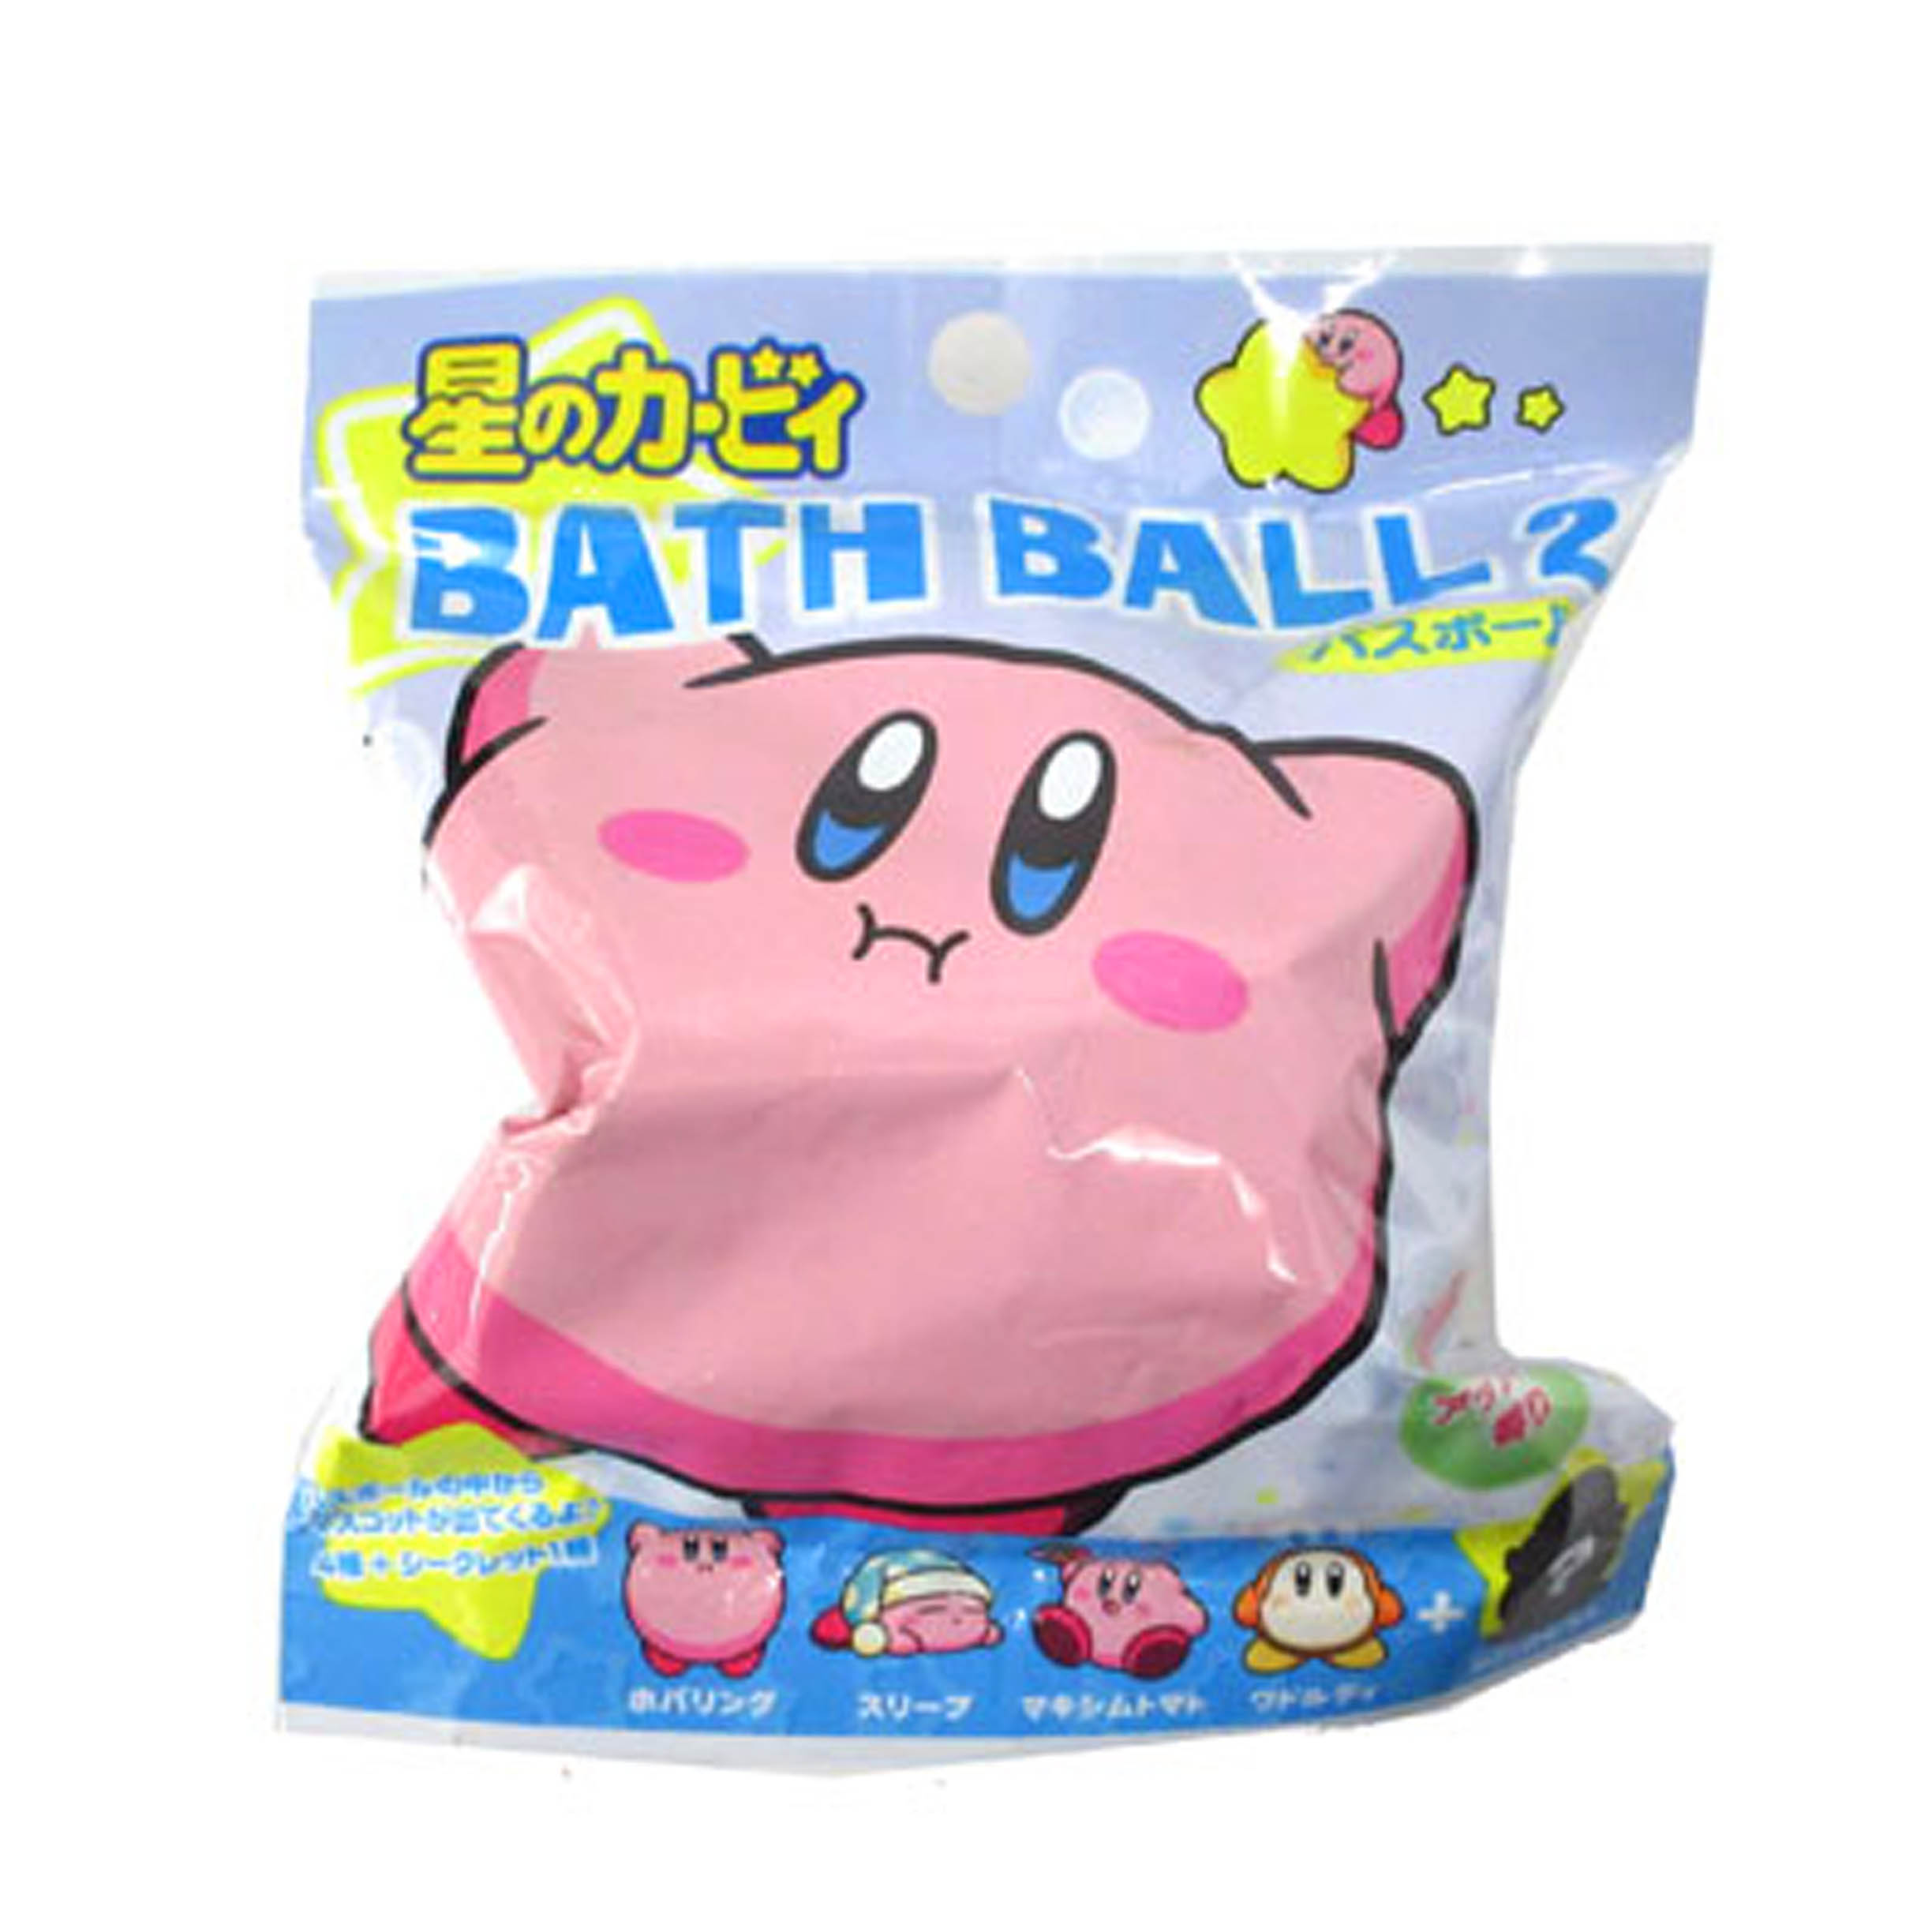 沐浴球 60g-蘋果香 Kirby 日本進口正版授權